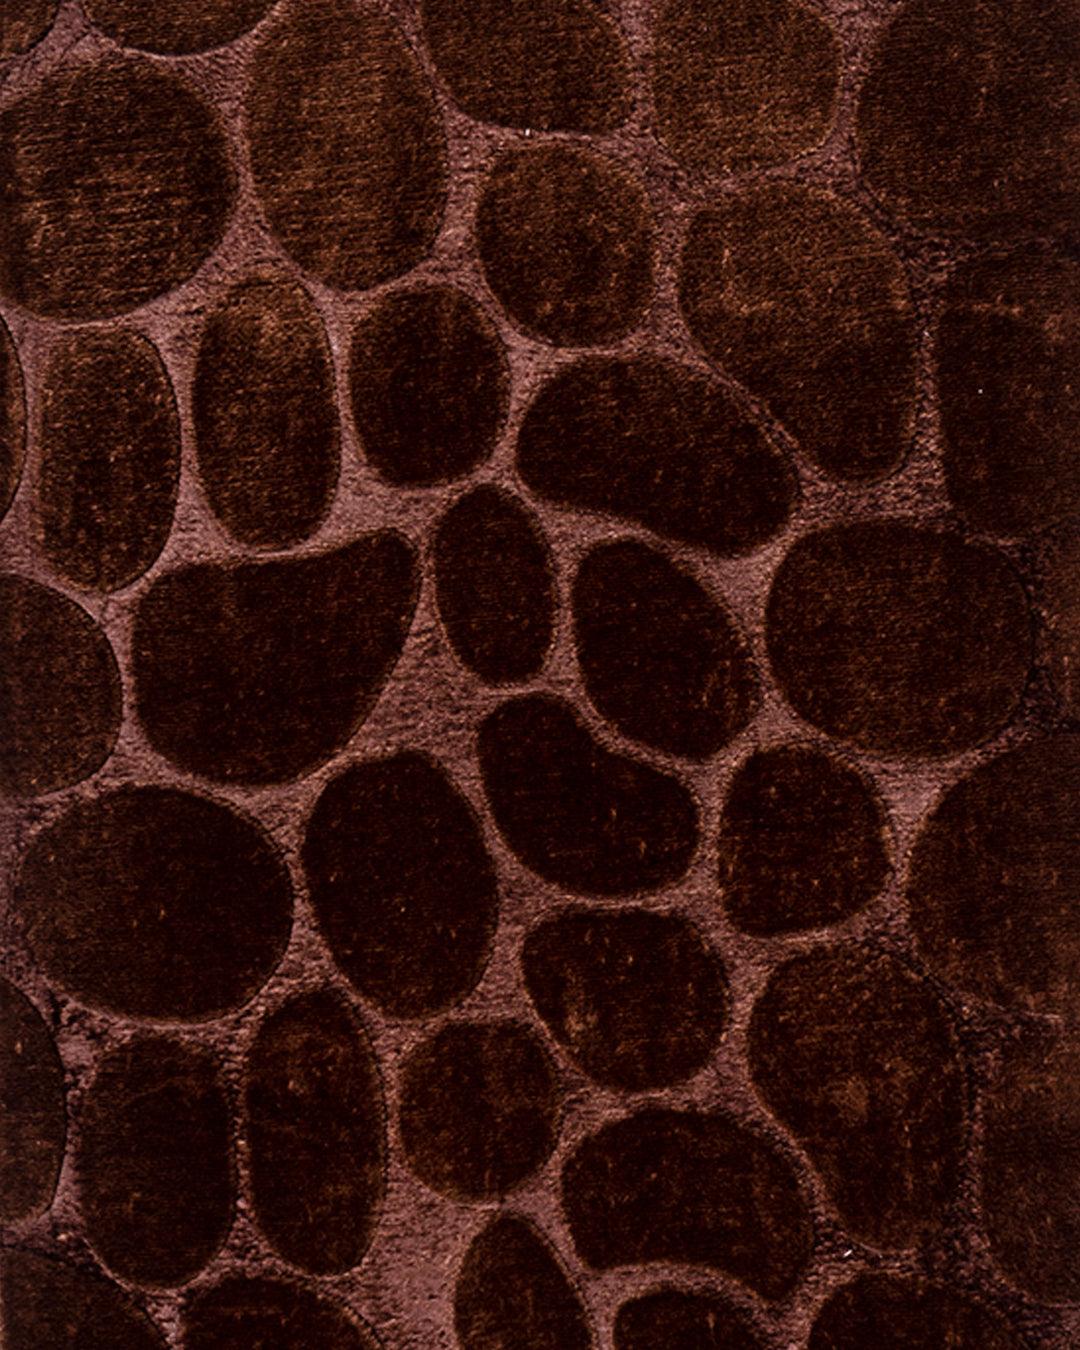 Indoor Mat, Stone Design, Brown, Microfiber - MARKET 99